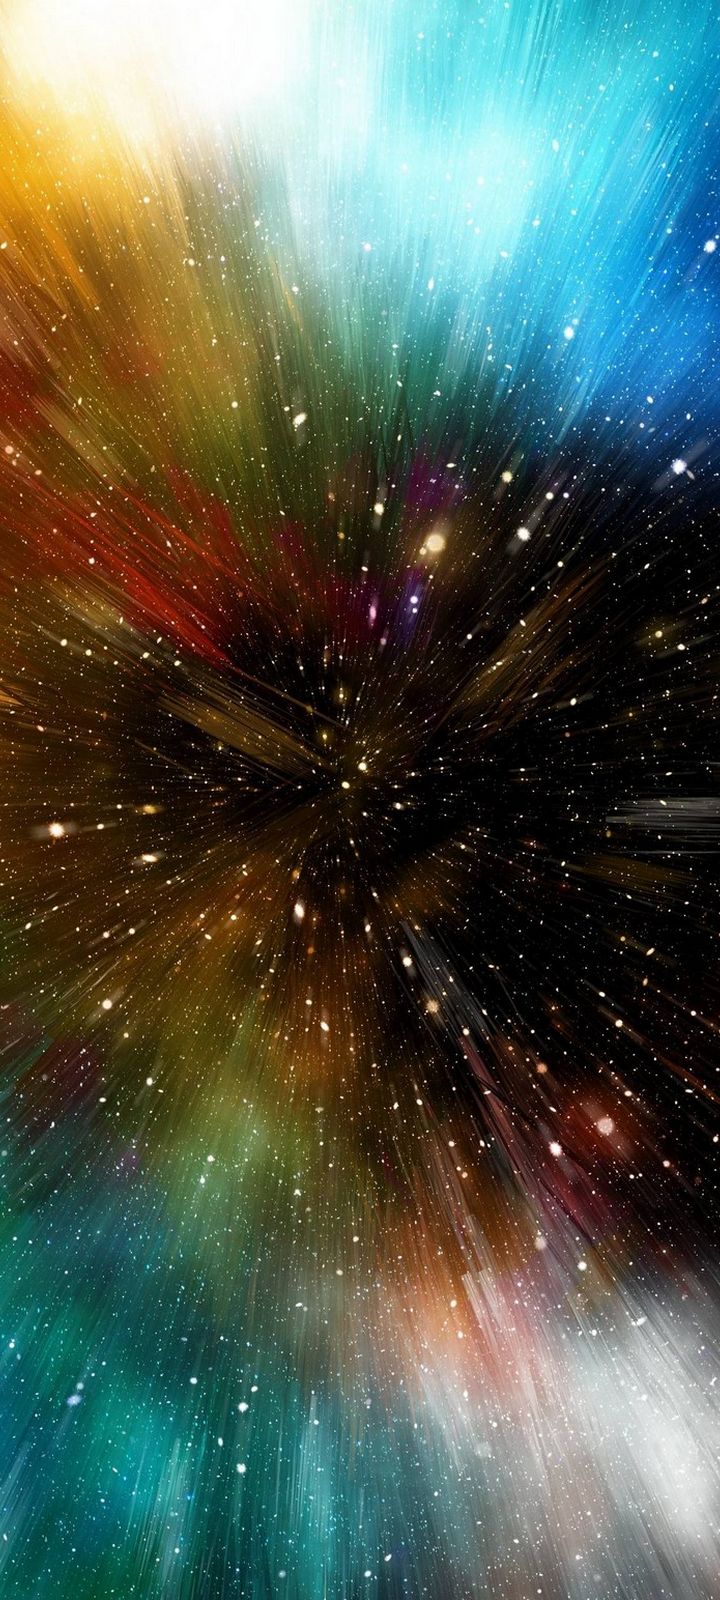 Universe Galaxy Multicolored Wallpaper - [720x1600]